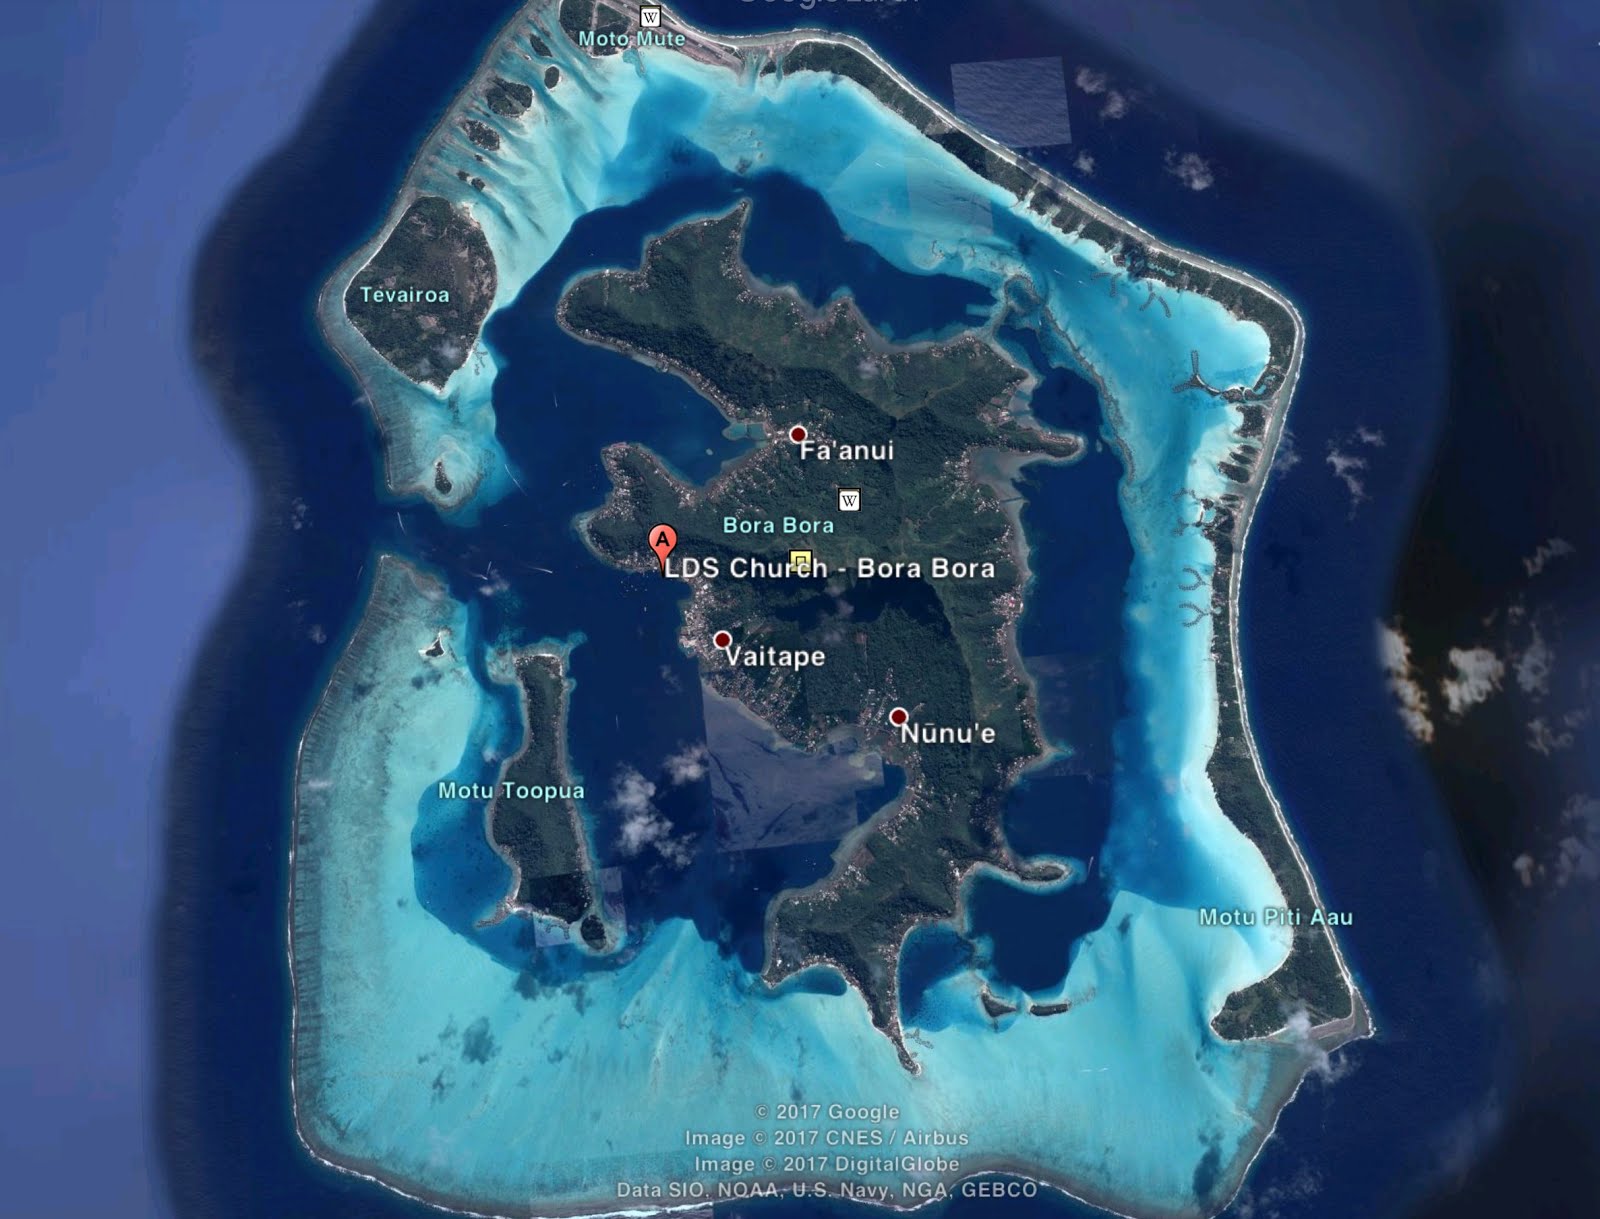 5th Area: Anau, Bora Bora